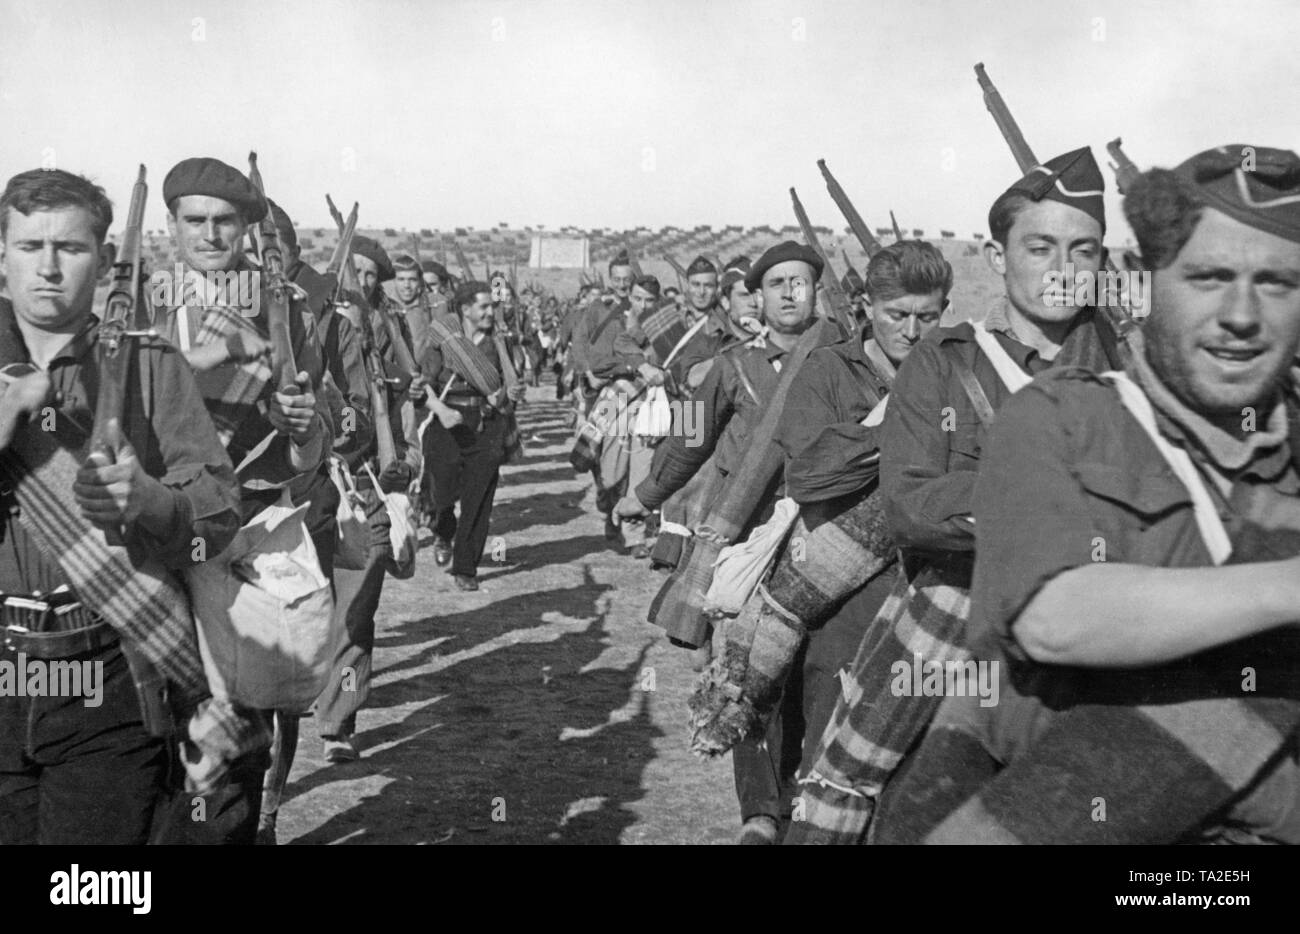 Foto di volontari della Falangists durante un esercizio nella Guerra Civile spagnola nel 1937. I soldati indossare le magliette blu del partito fascista di Spagna, Falange Espanola. Esse sono armate con i moschettoni e trasportare pacchetto del campo. Foto Stock